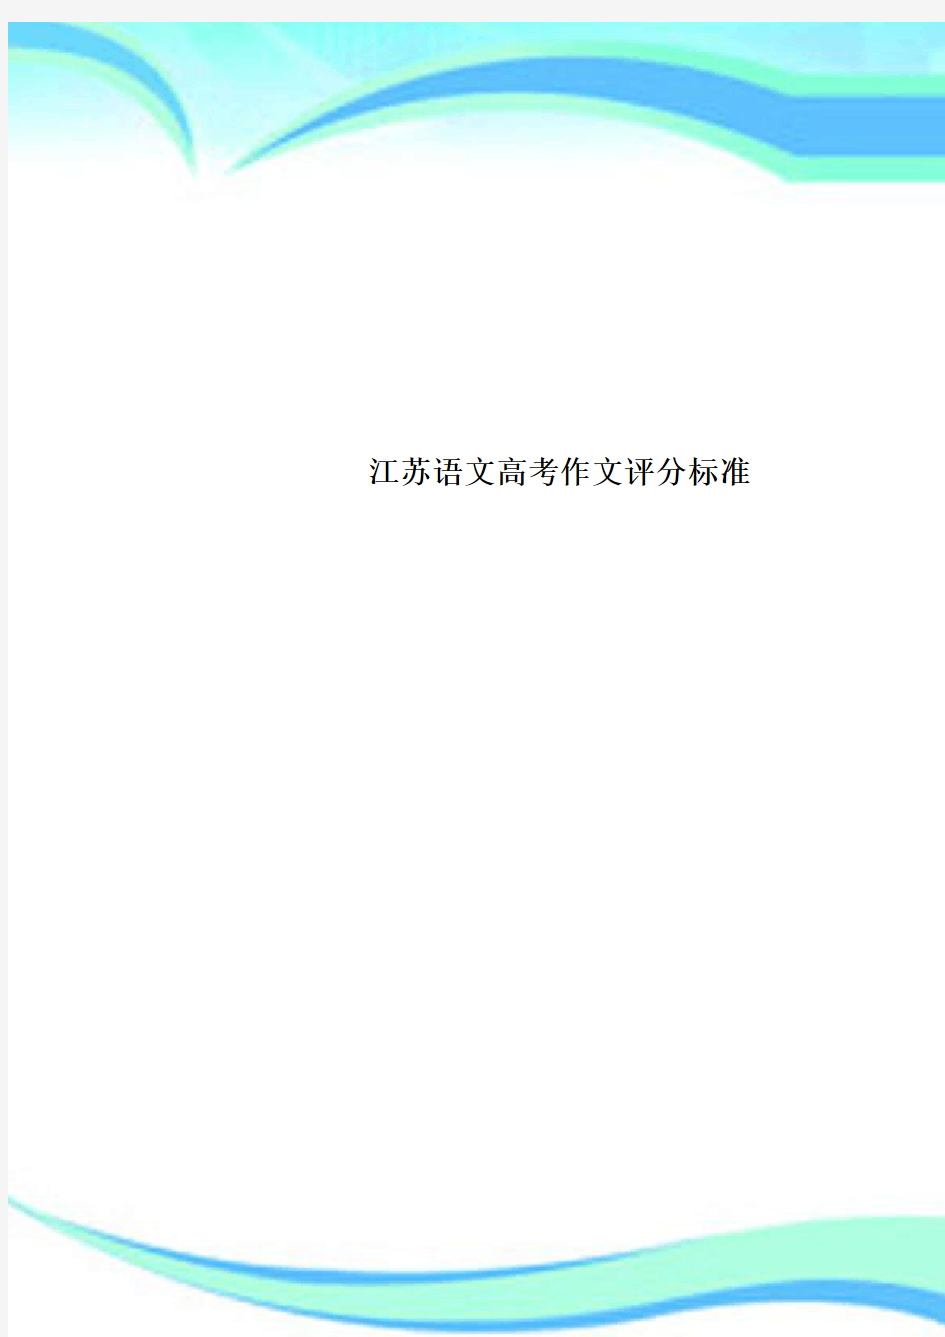 江苏语文高考作文评分标准